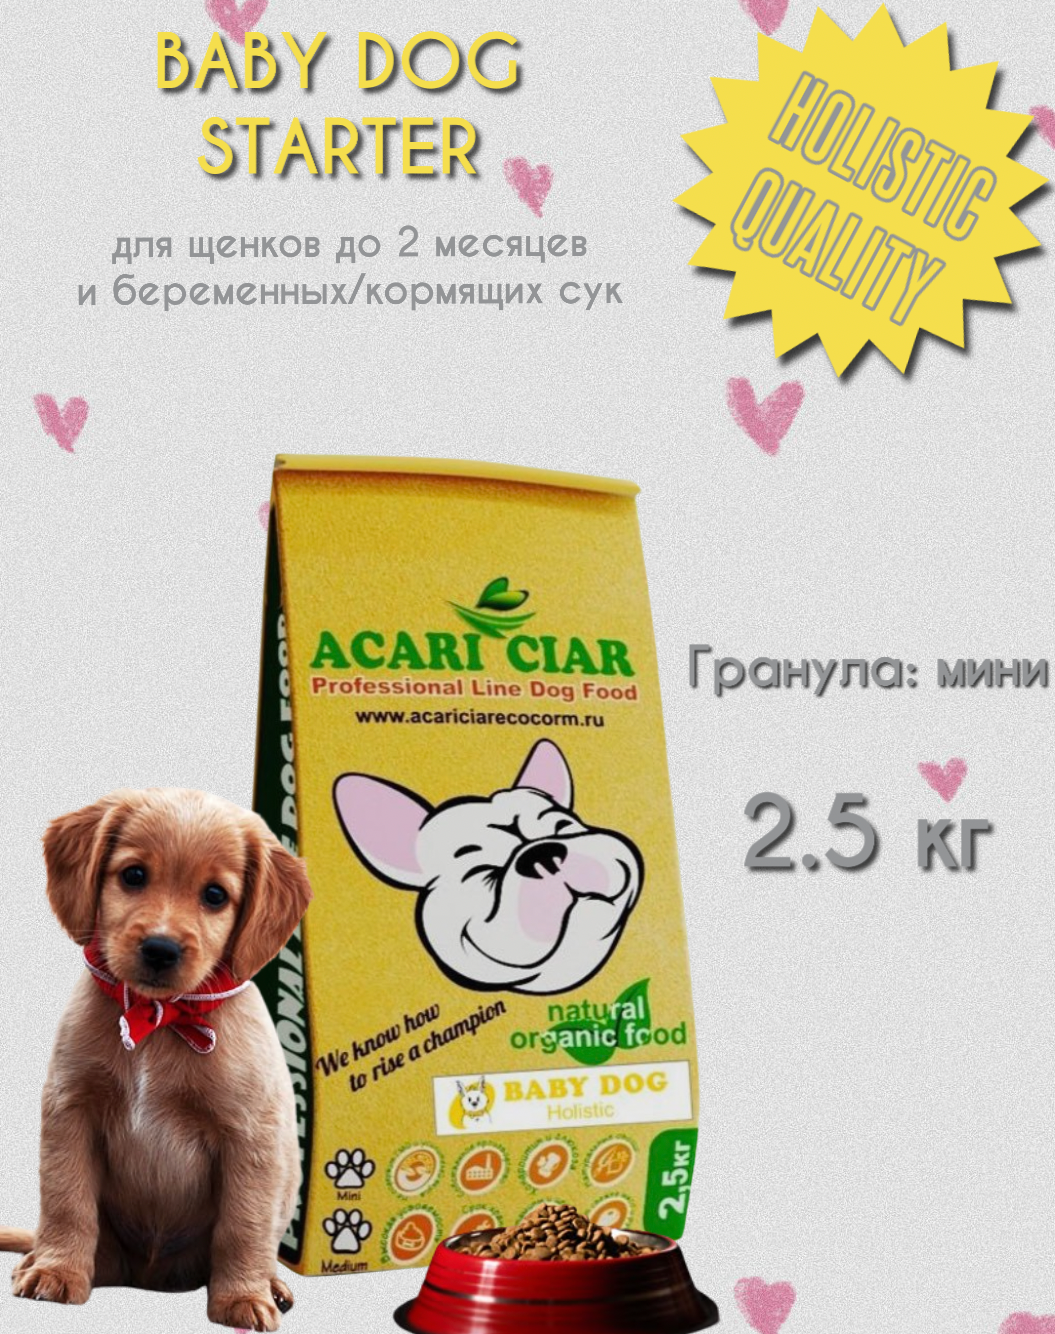 Корм сухой Acari Ciar BABY DOG STARTER холистик 2.5 кг Мини гранула для щенков до 2 мес и беременных кормящих сук